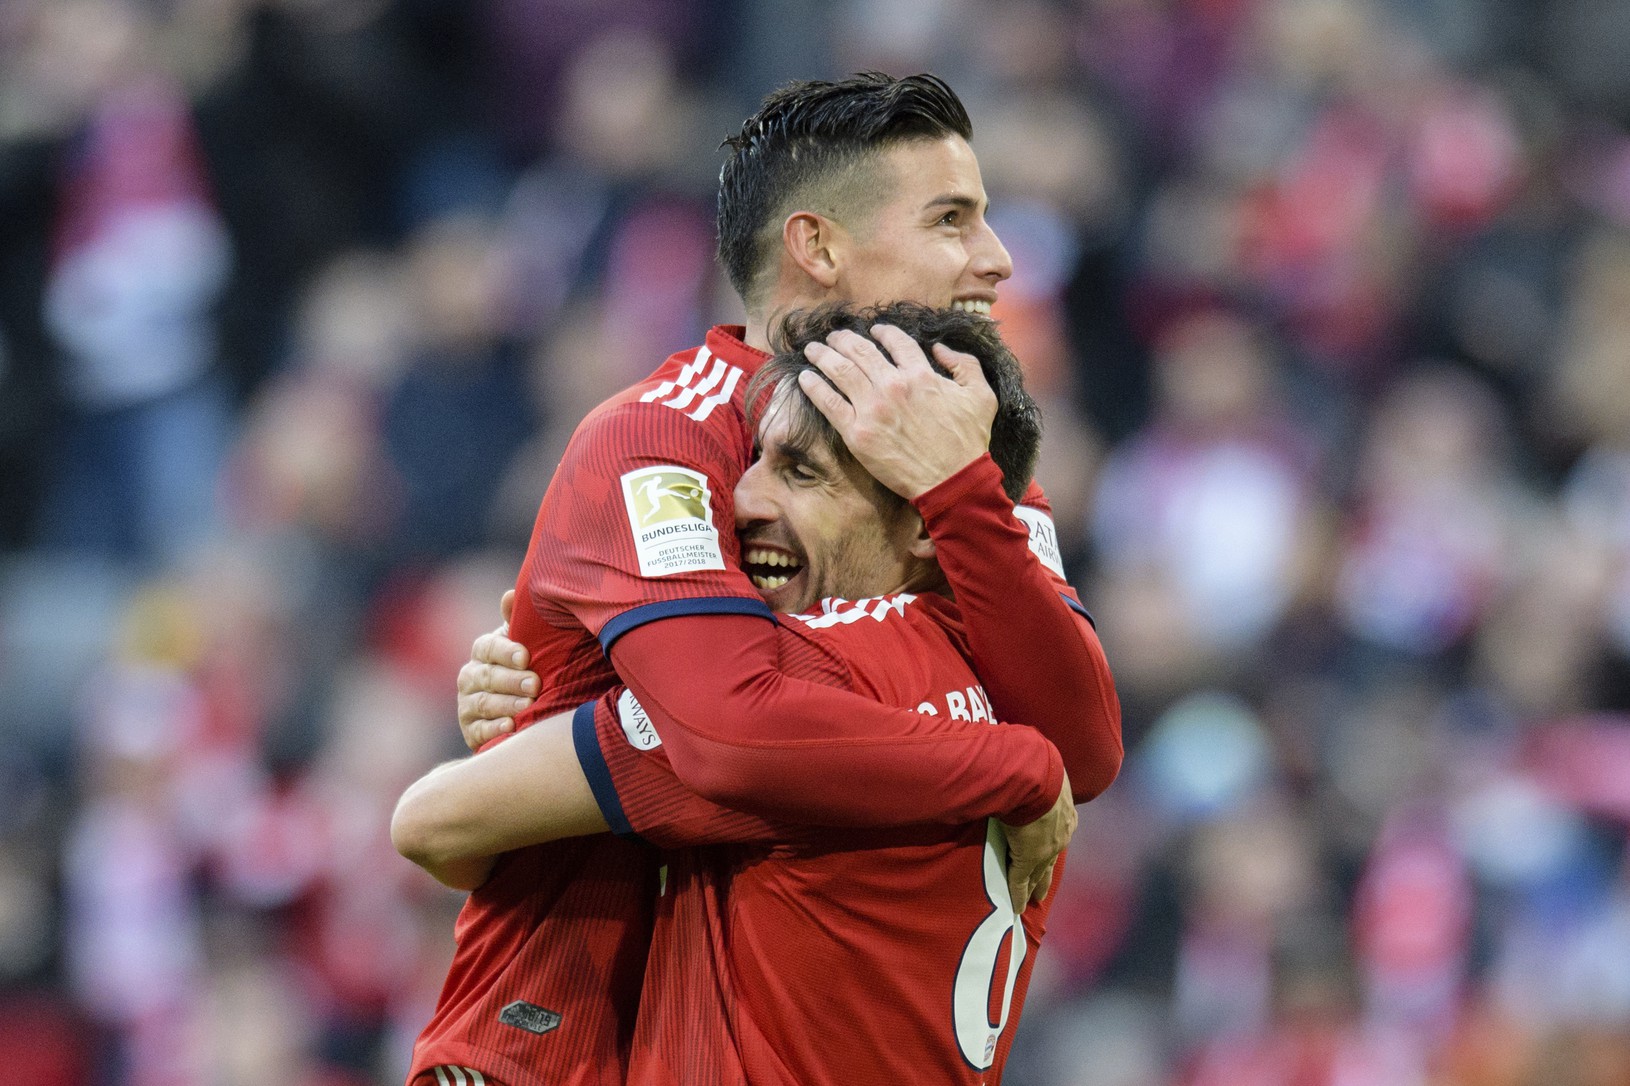 Radosť hráčov Bayernu Mníchov